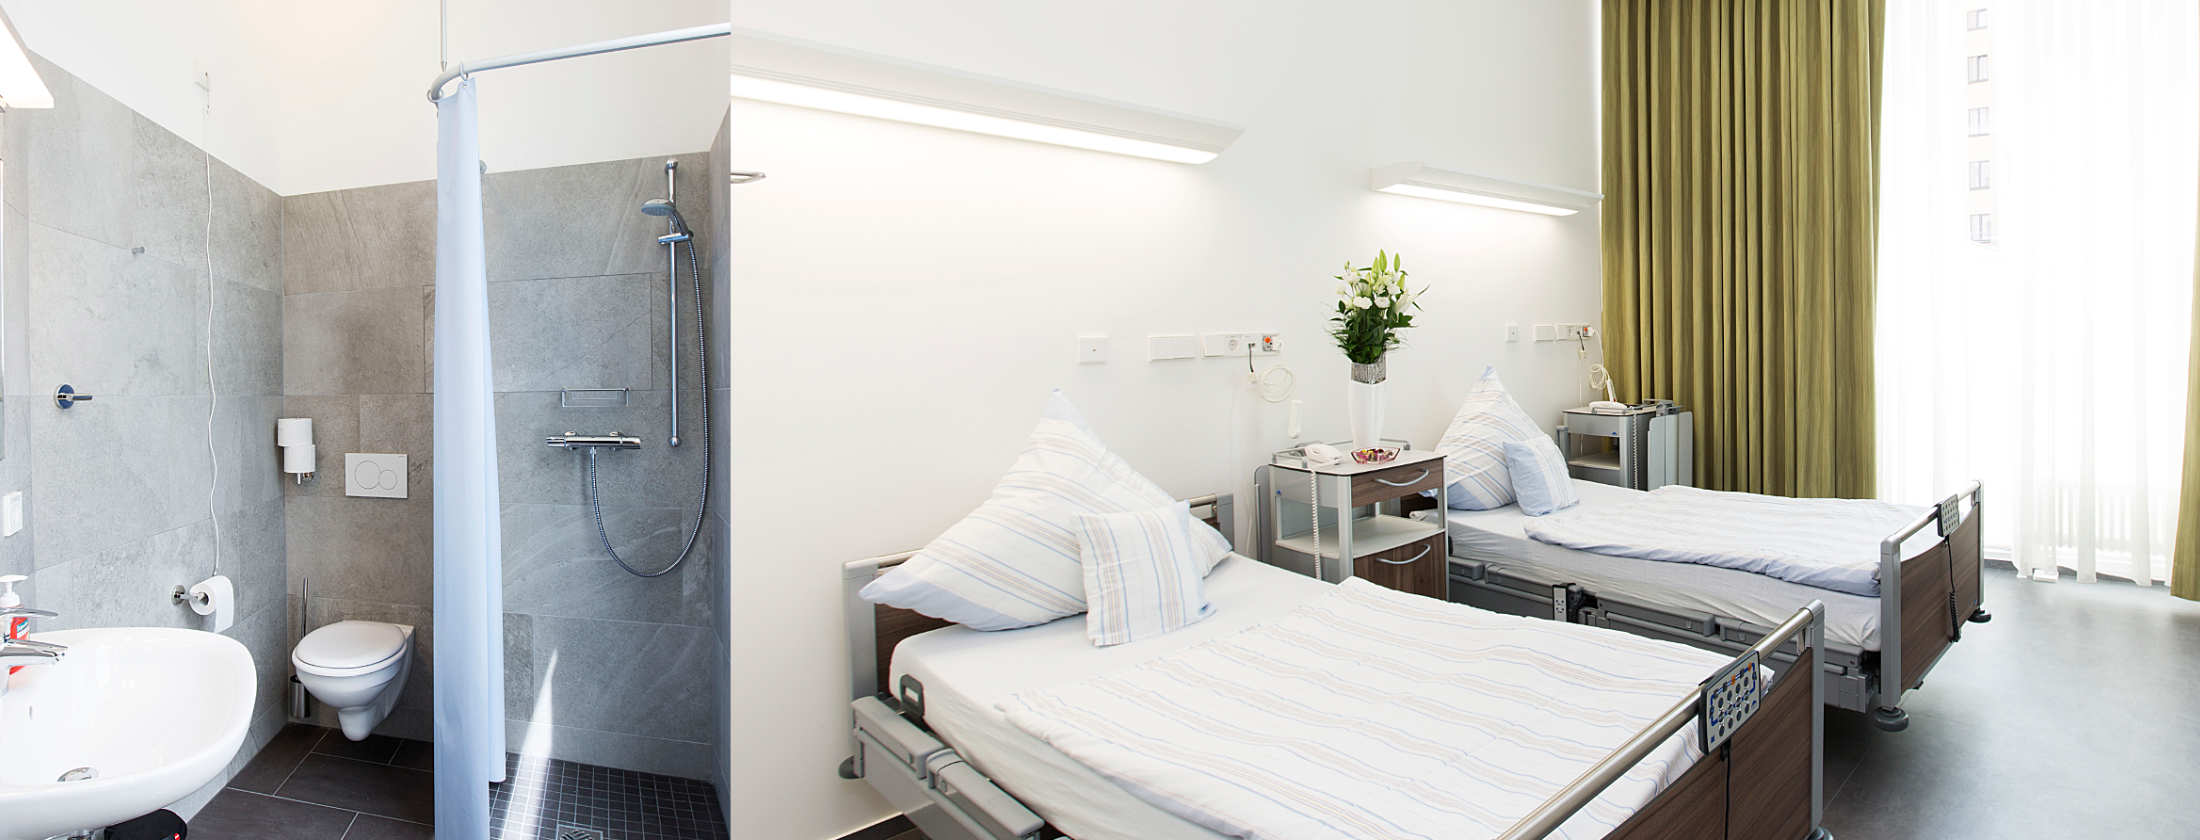 Eine Bildcollage aus zwei Fotografien der Privatklinik Berger. Eine private Dusche mit WC für stationäre Patienten. Sowie ein Patientenzimmer für stationäre Patienten mit zwei Betten, großem Fenster und Fernsehen. Der Raum ist hell und wirkt frisch.